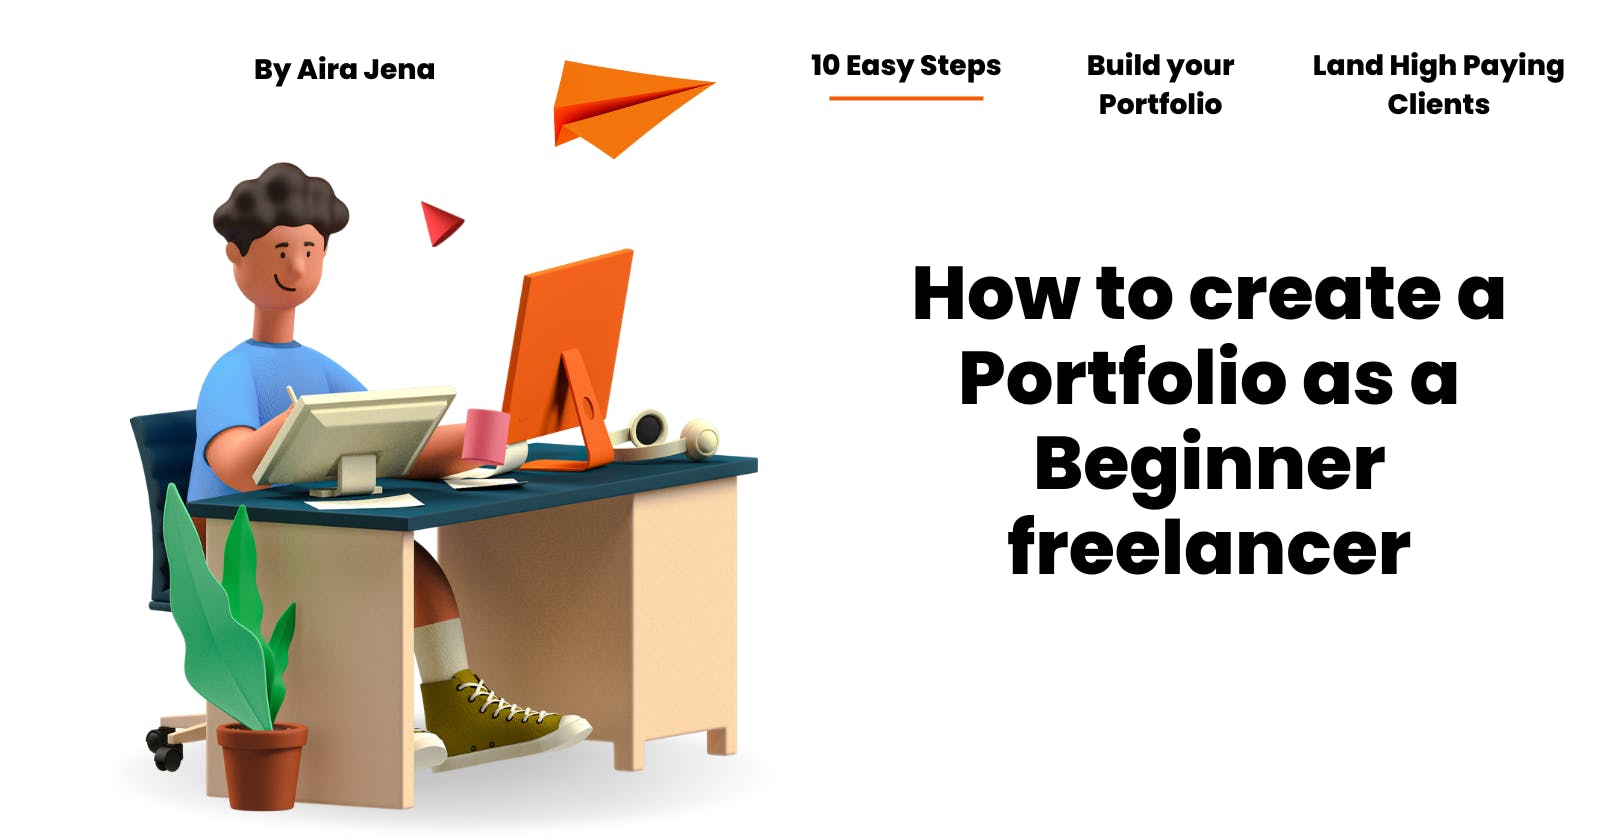 How to create a Portfolio as a Beginner freelancer